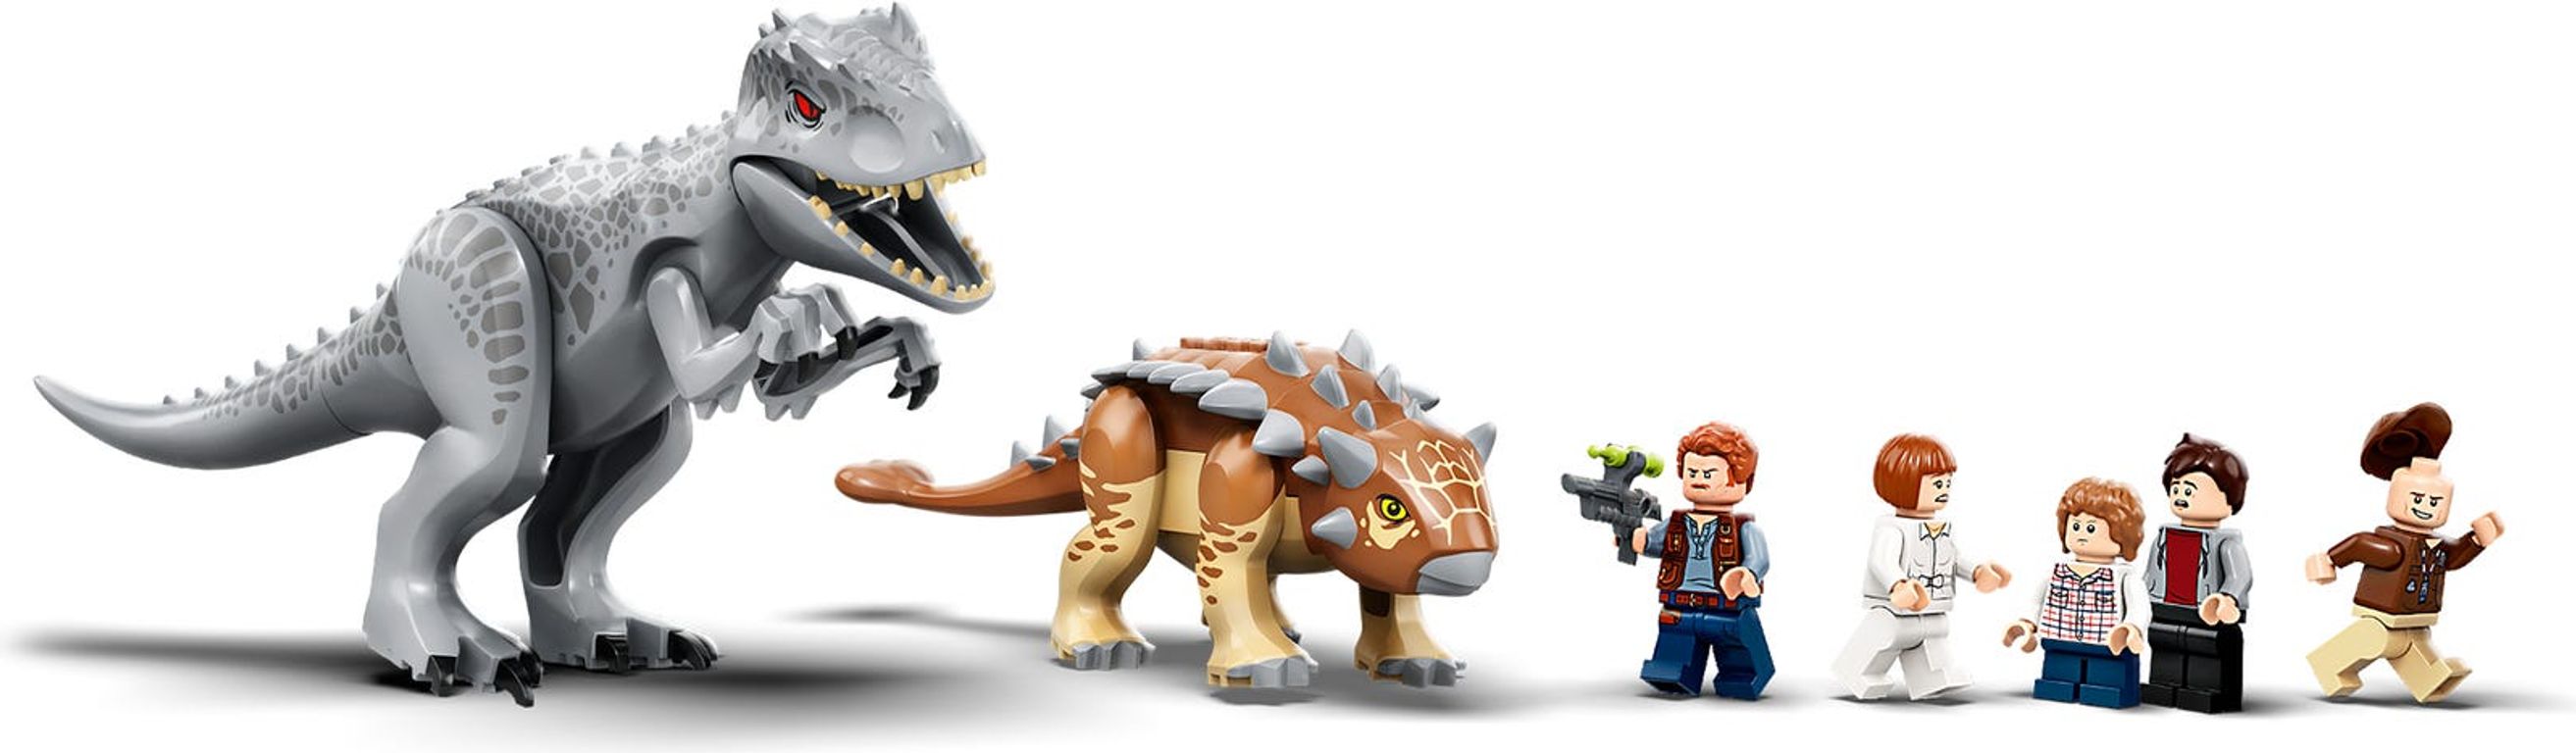 LEGO® Jurassic World Indominus Rex vs. Ankylosaurus minifigures